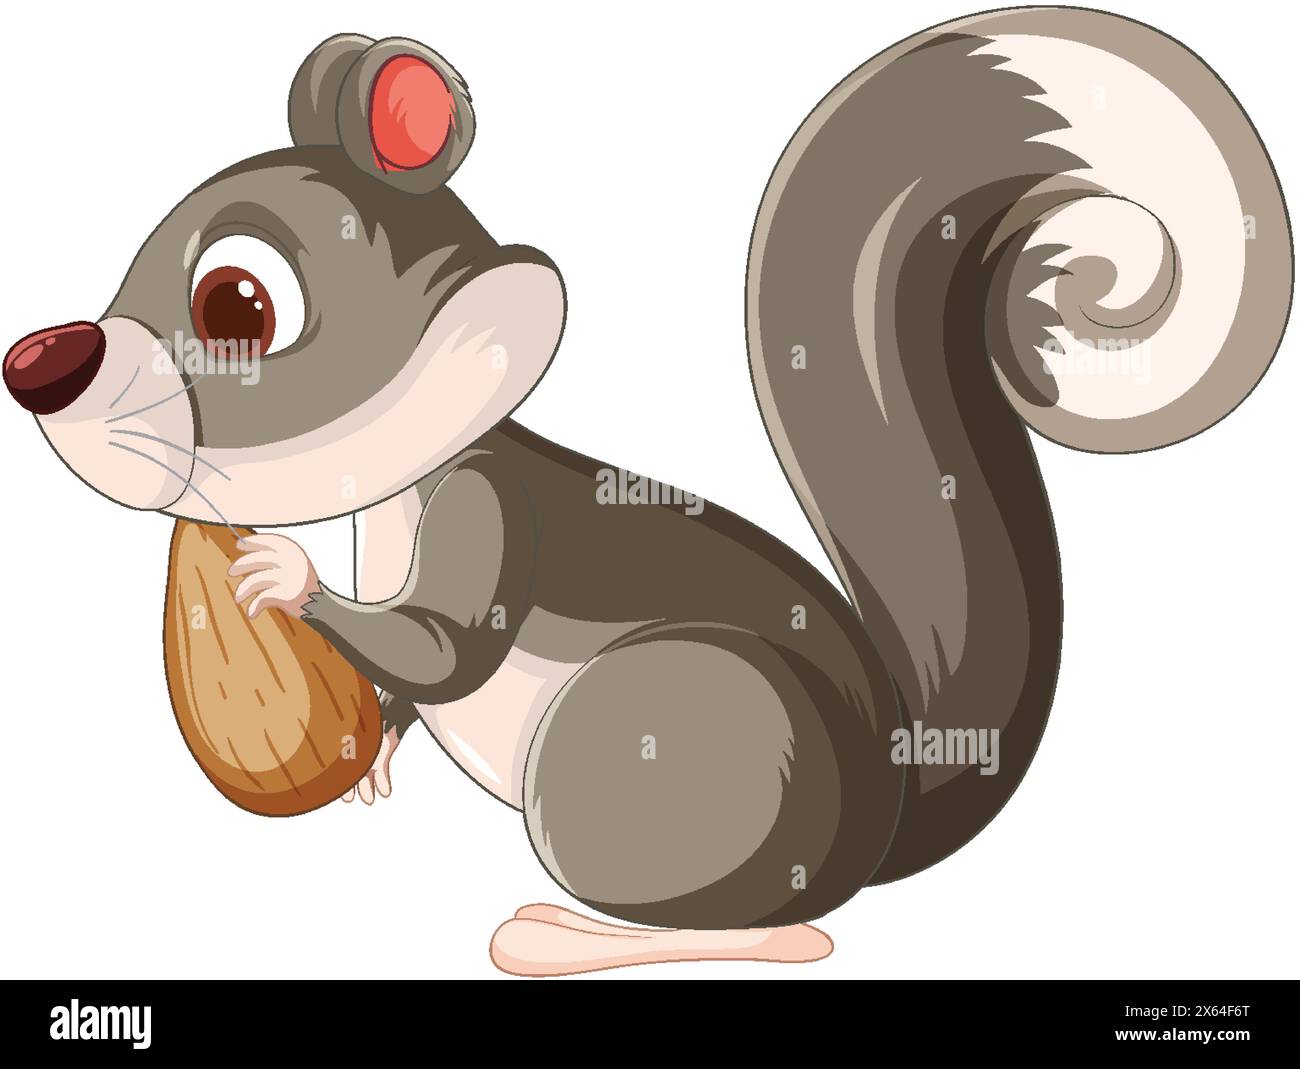 Vektor-Illustration eines Eichhörnchens mit einer Eichel Stock Vektor